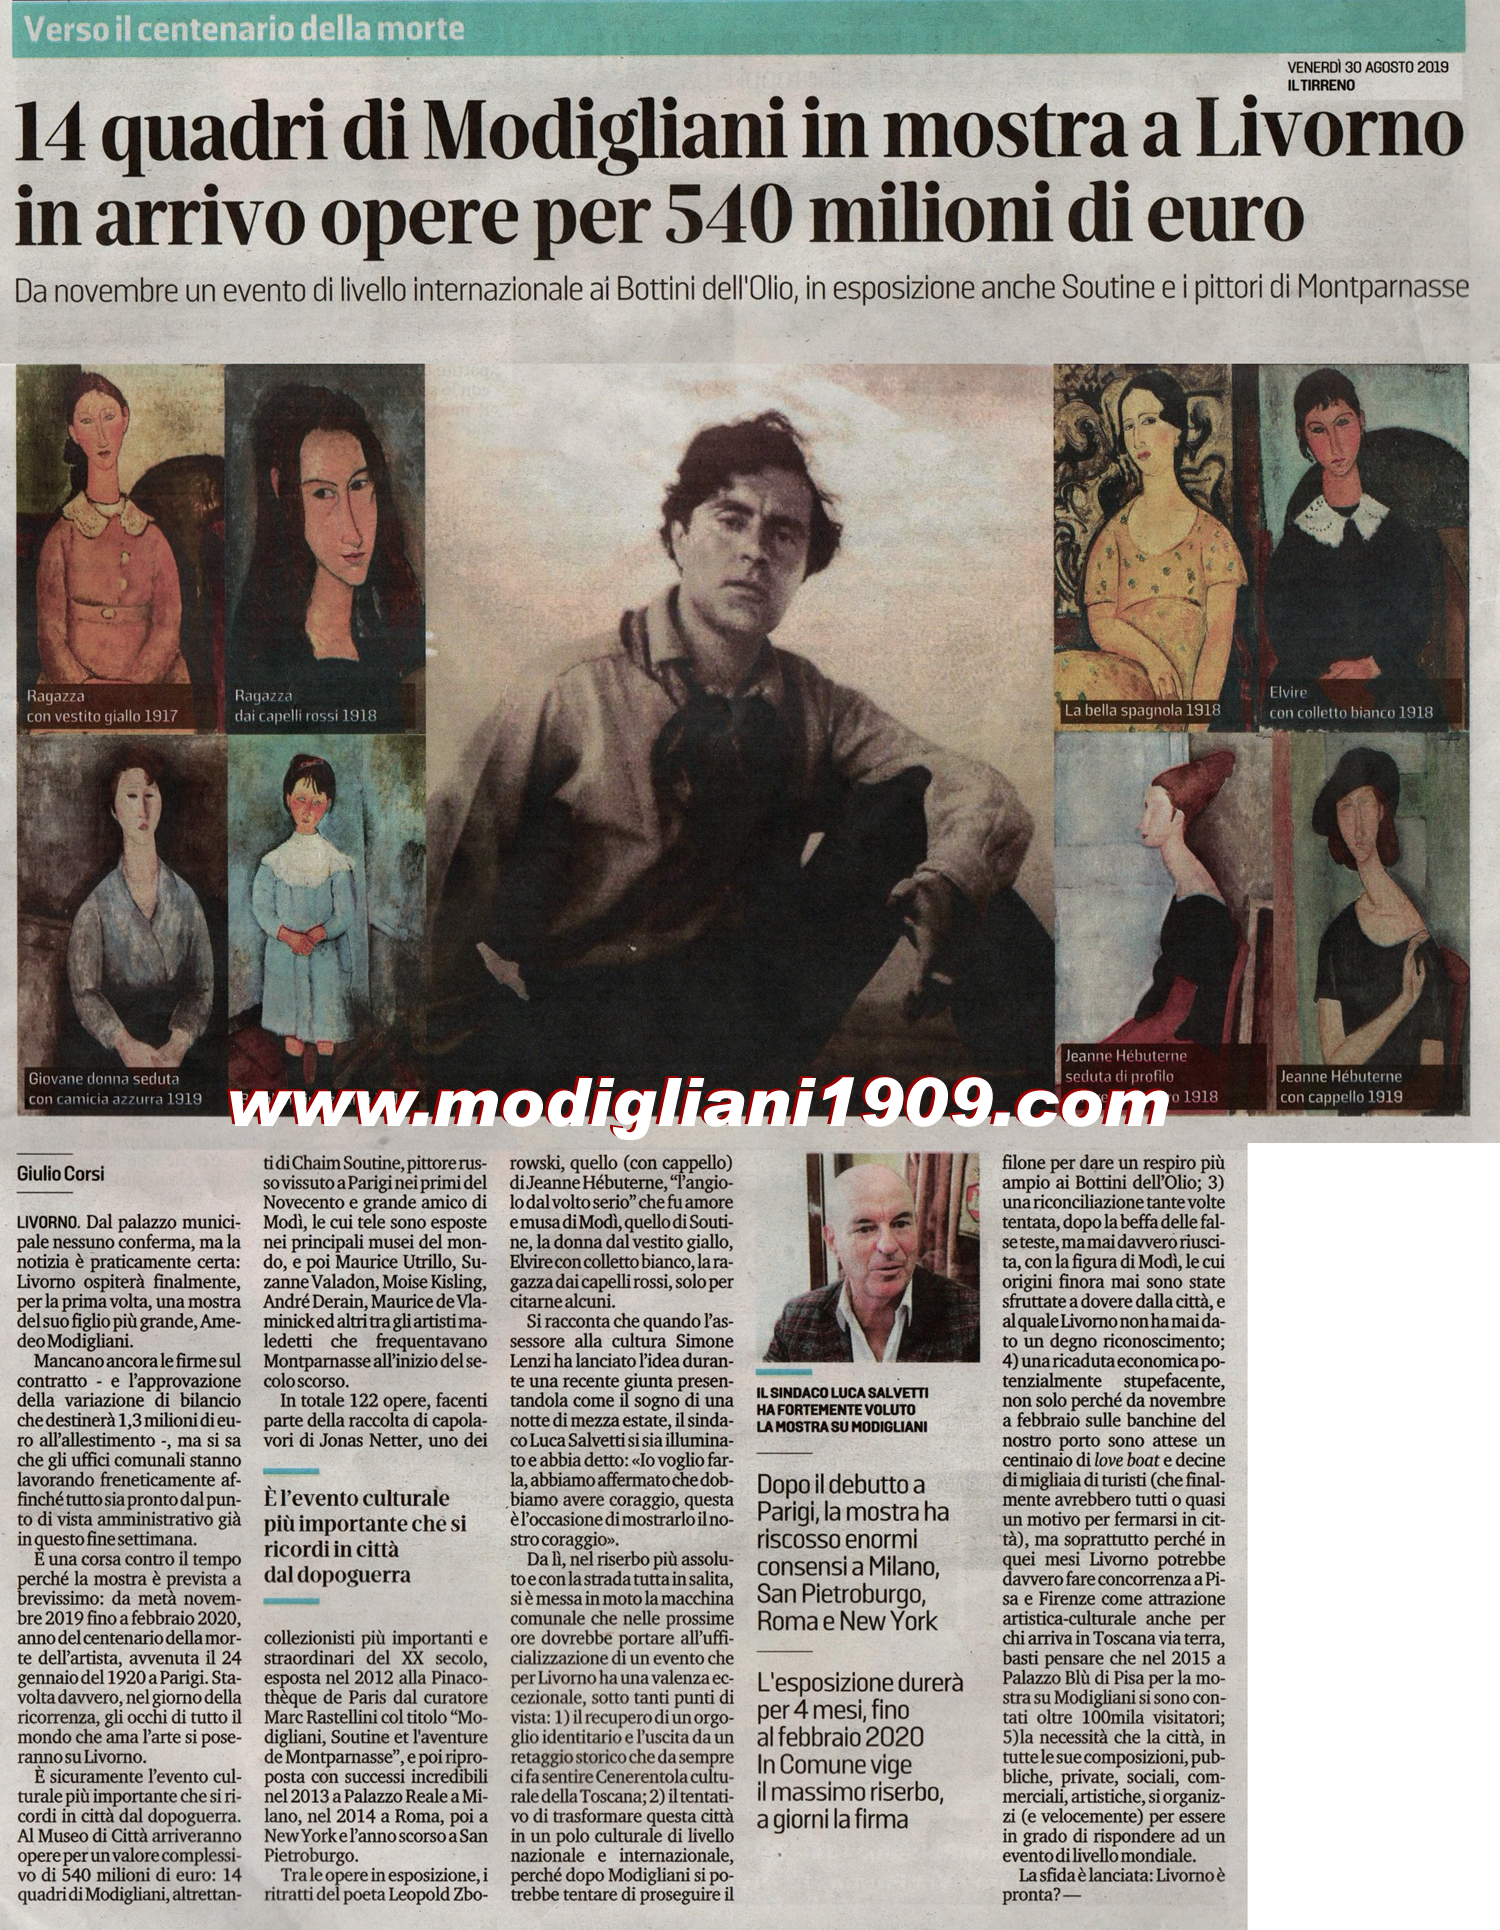 14 works by Modigliani in Livorno exhibition